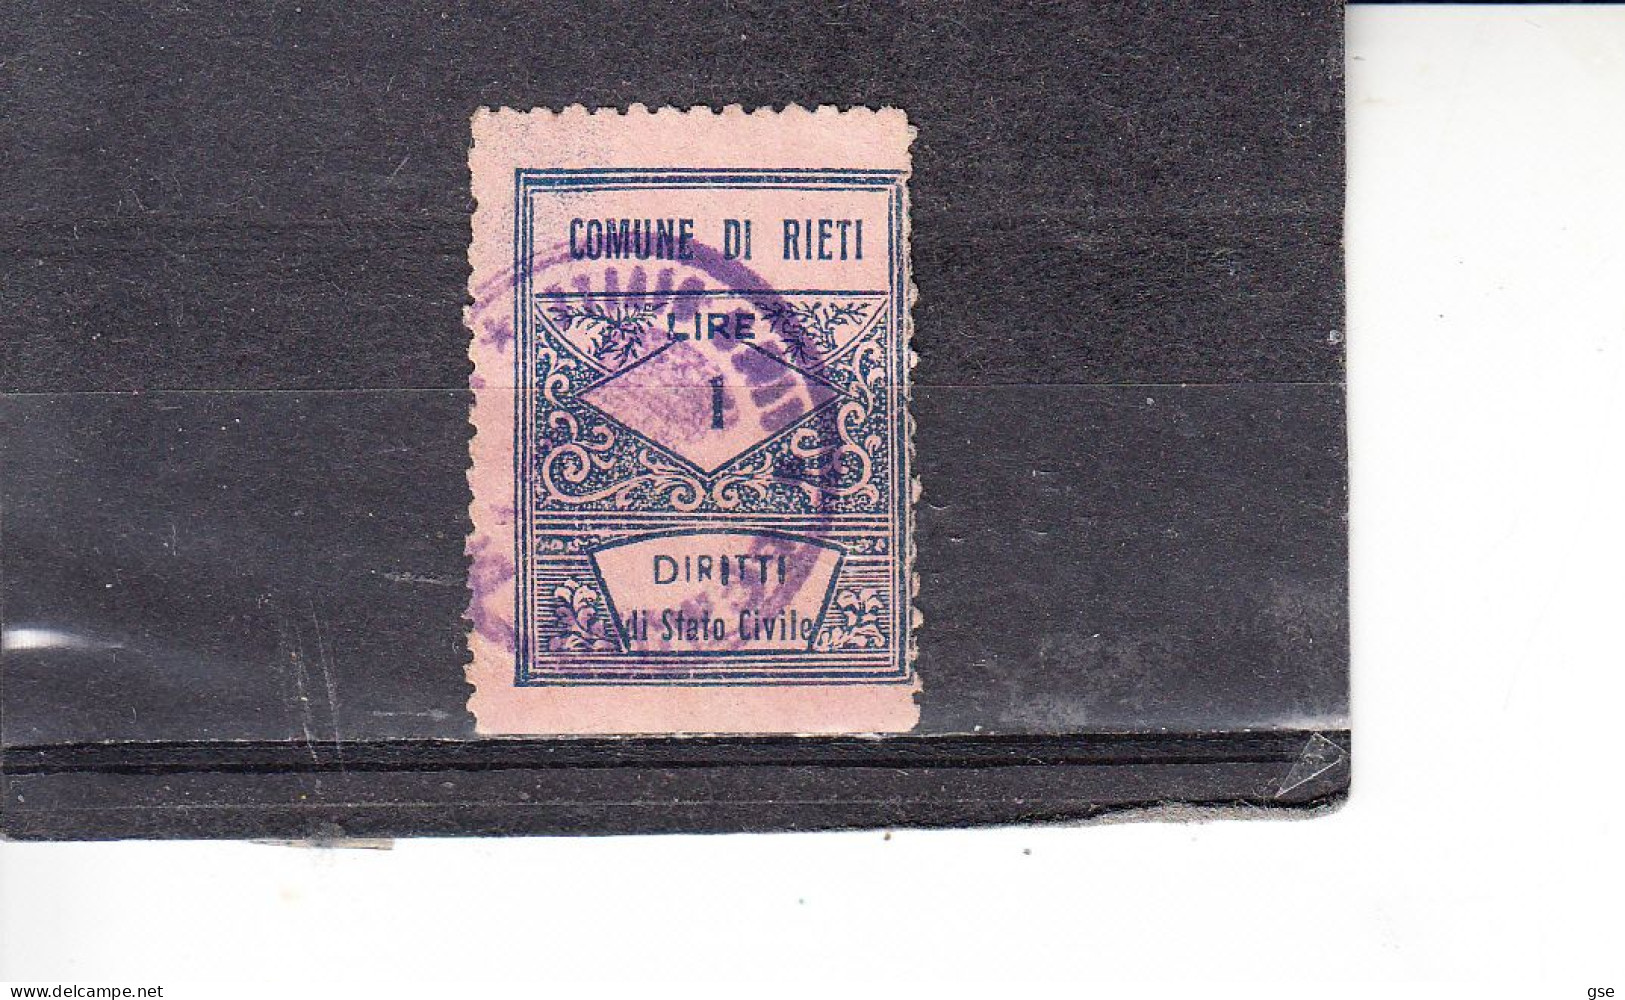 RIETI - Municipio - Marca "diritti Stato Civile" - Revenue Stamps